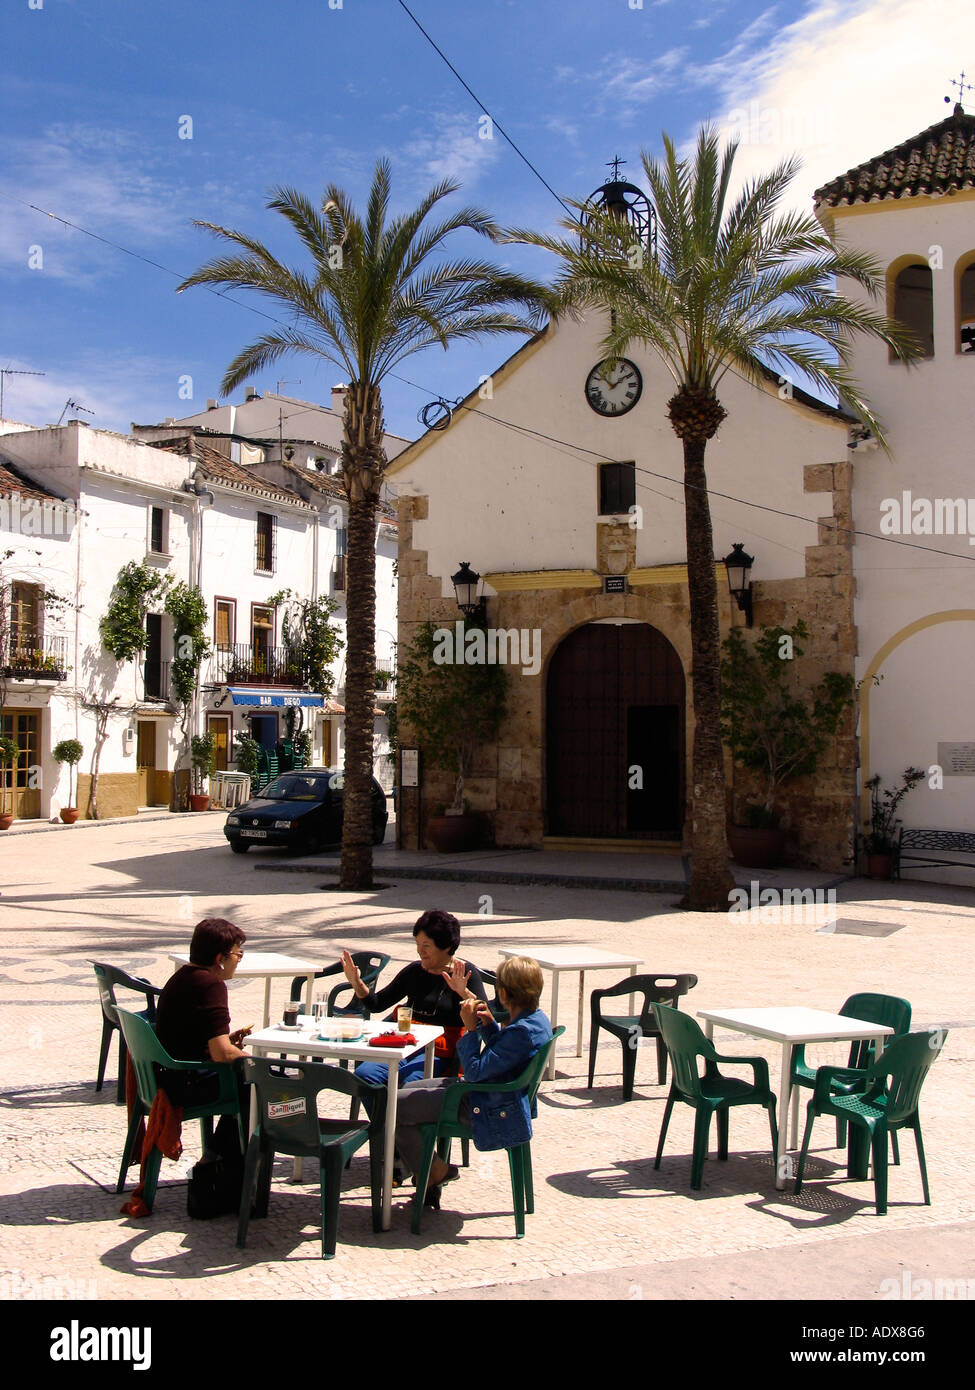 Central Plaza in Ojen Costa del Sol Andalucia Spain Stock Photo